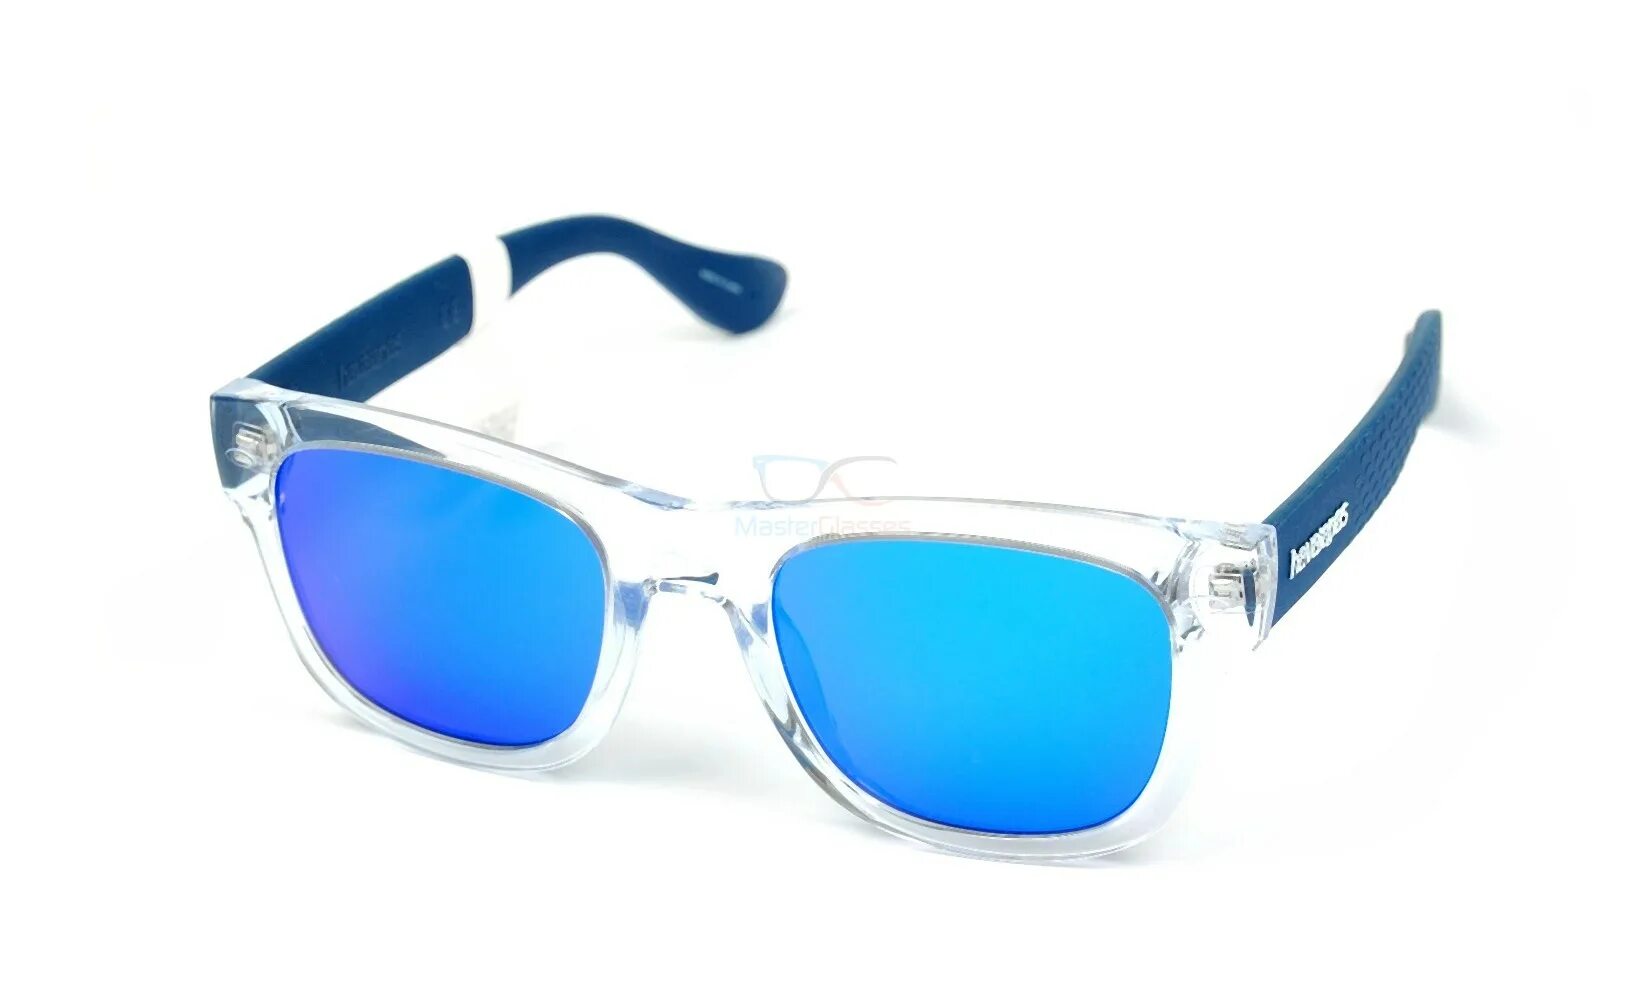 Купить синие очки. Havaianas очки Paraty/l. Havaianas очки Blue. Havaianas Noronha / mr8 очки. Blue Bay очки солнцезащитные.